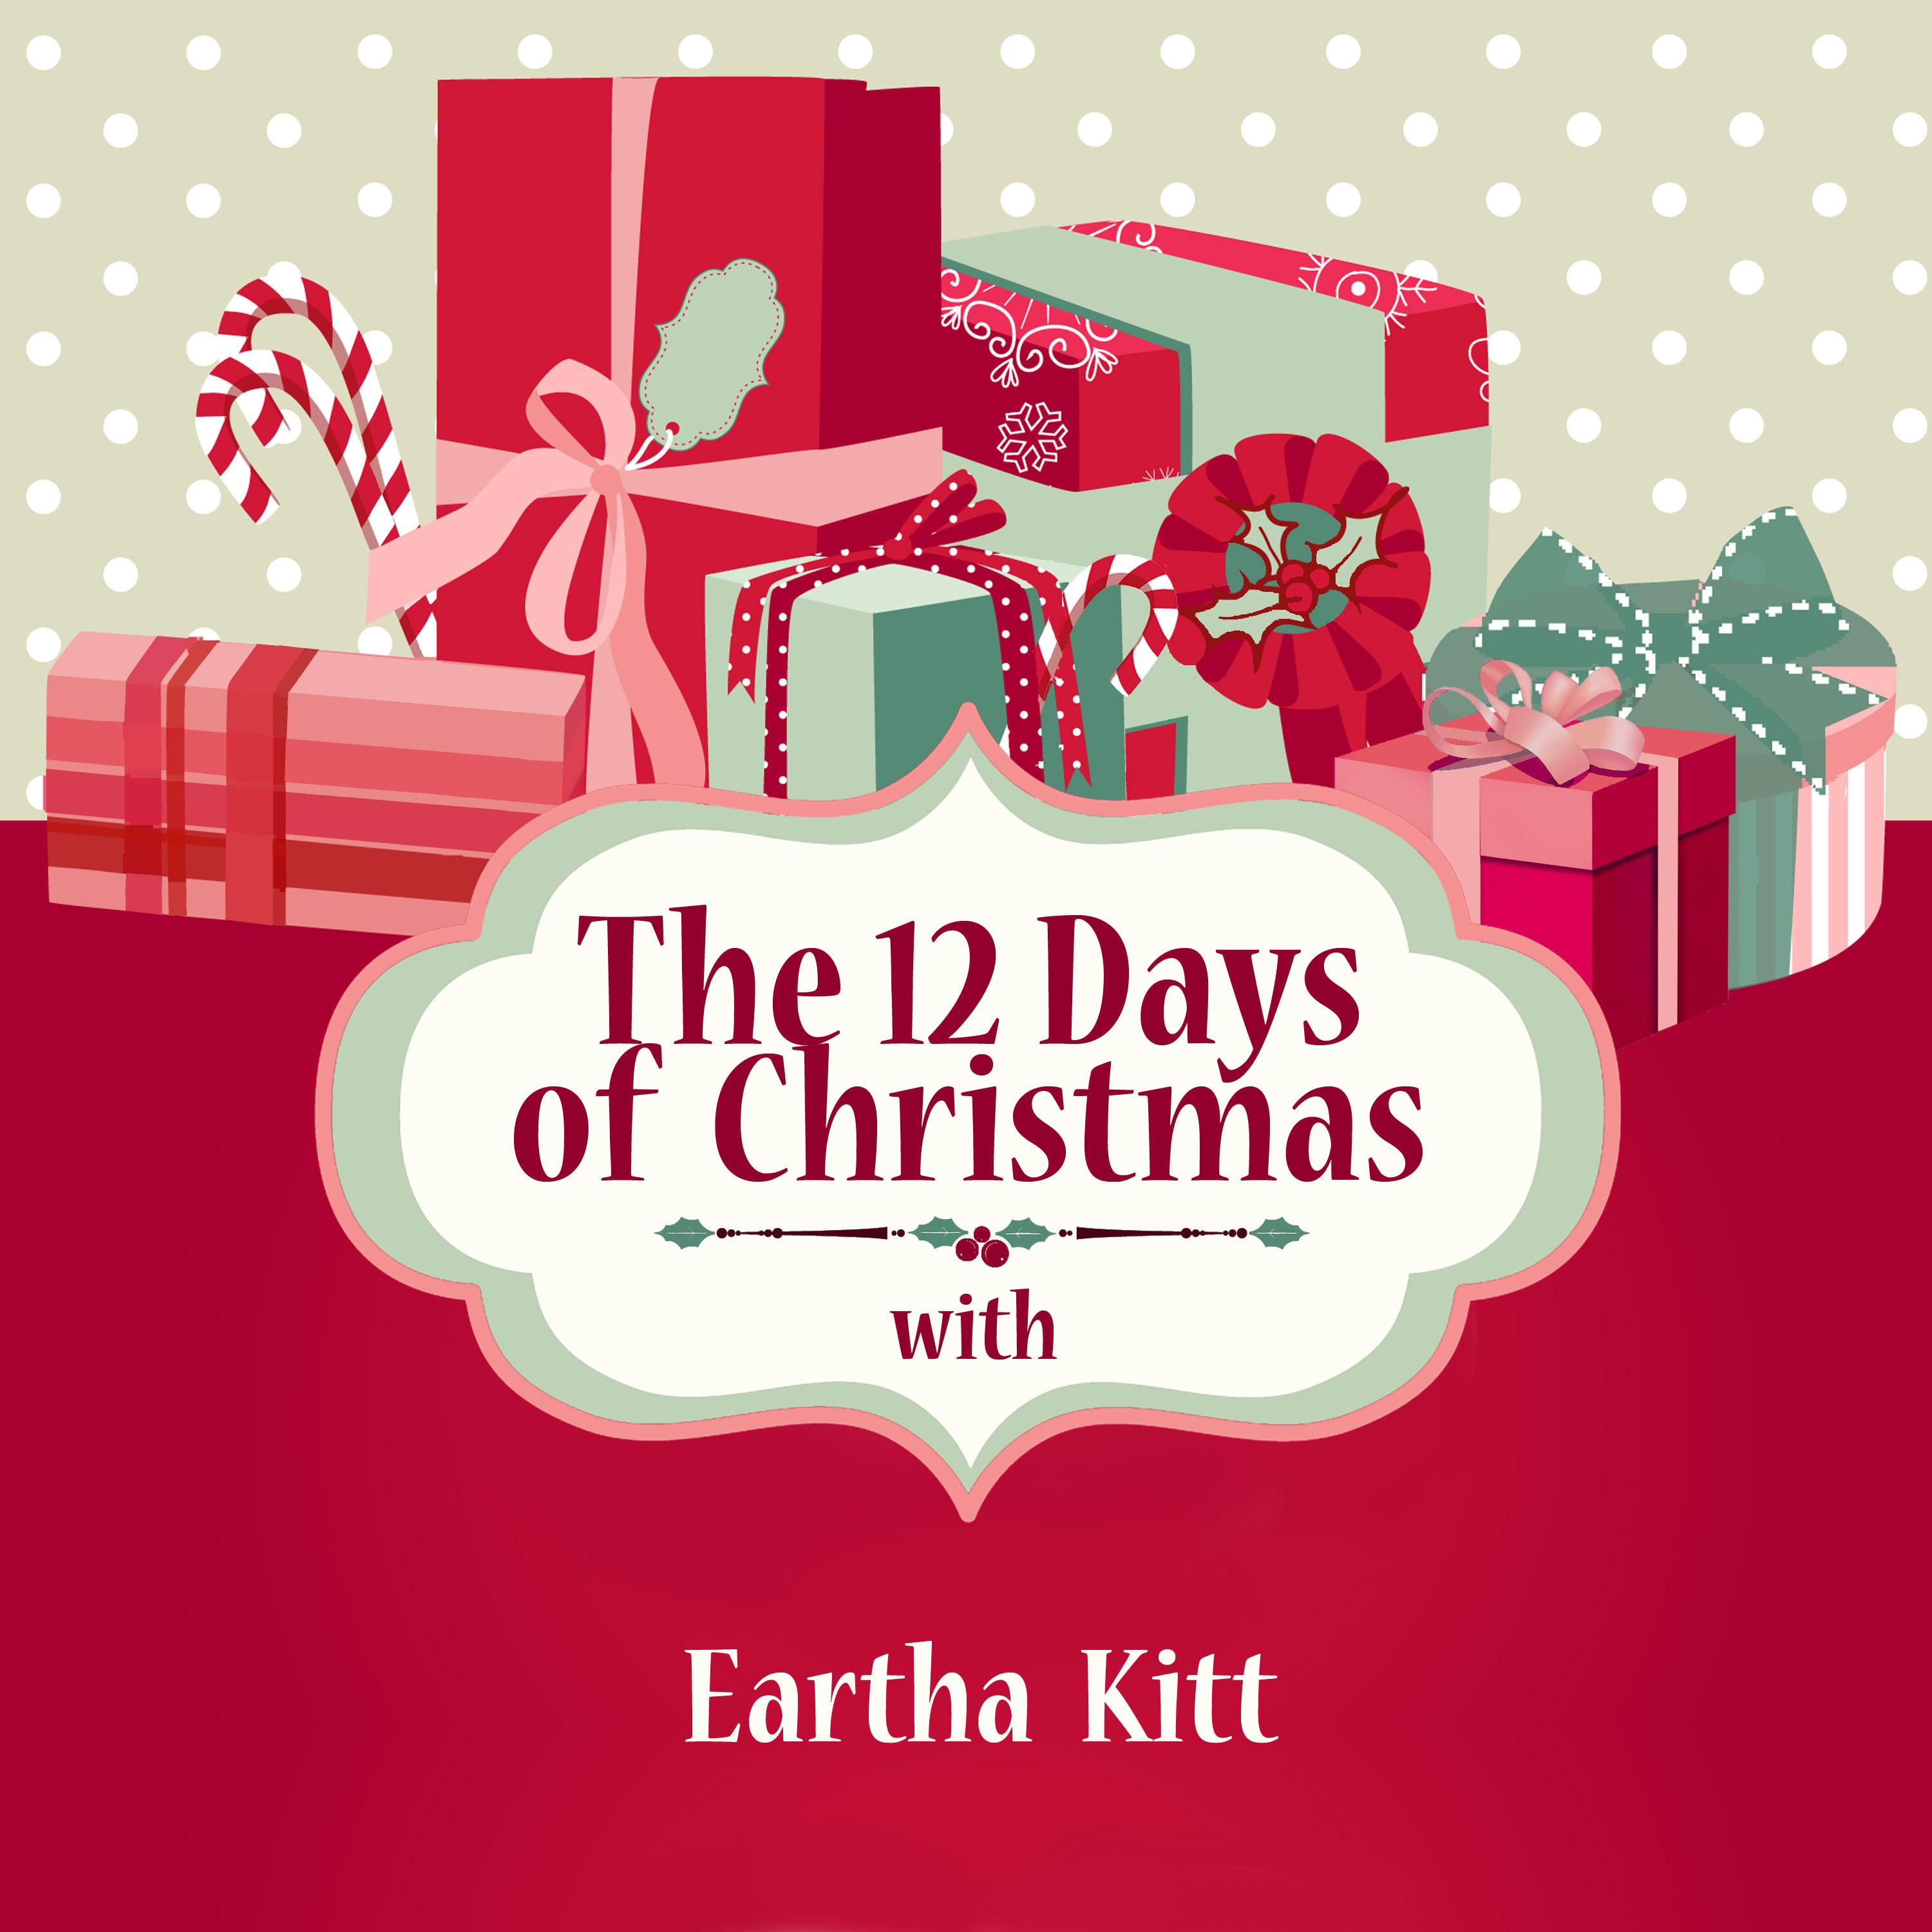 The 12 Days of Christmas with Eartha Kitt